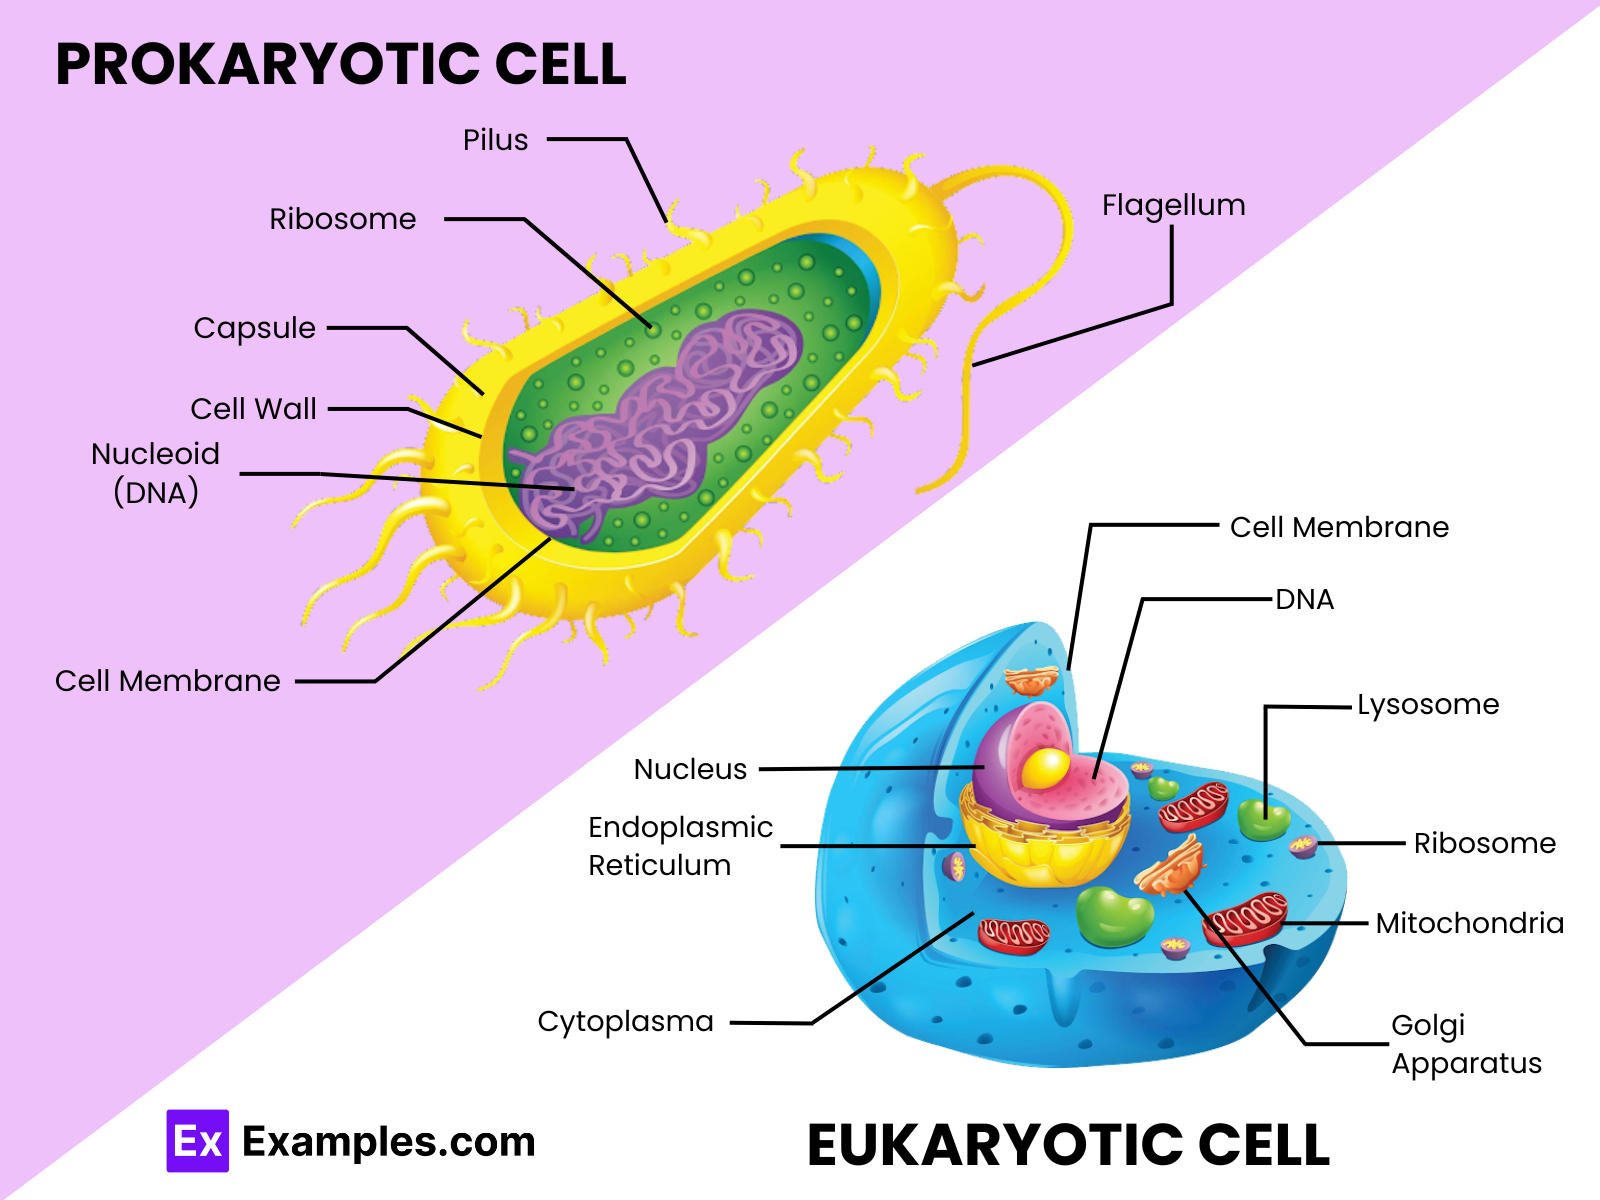 Prokaryotic Cell vs Eukaryotic Cell